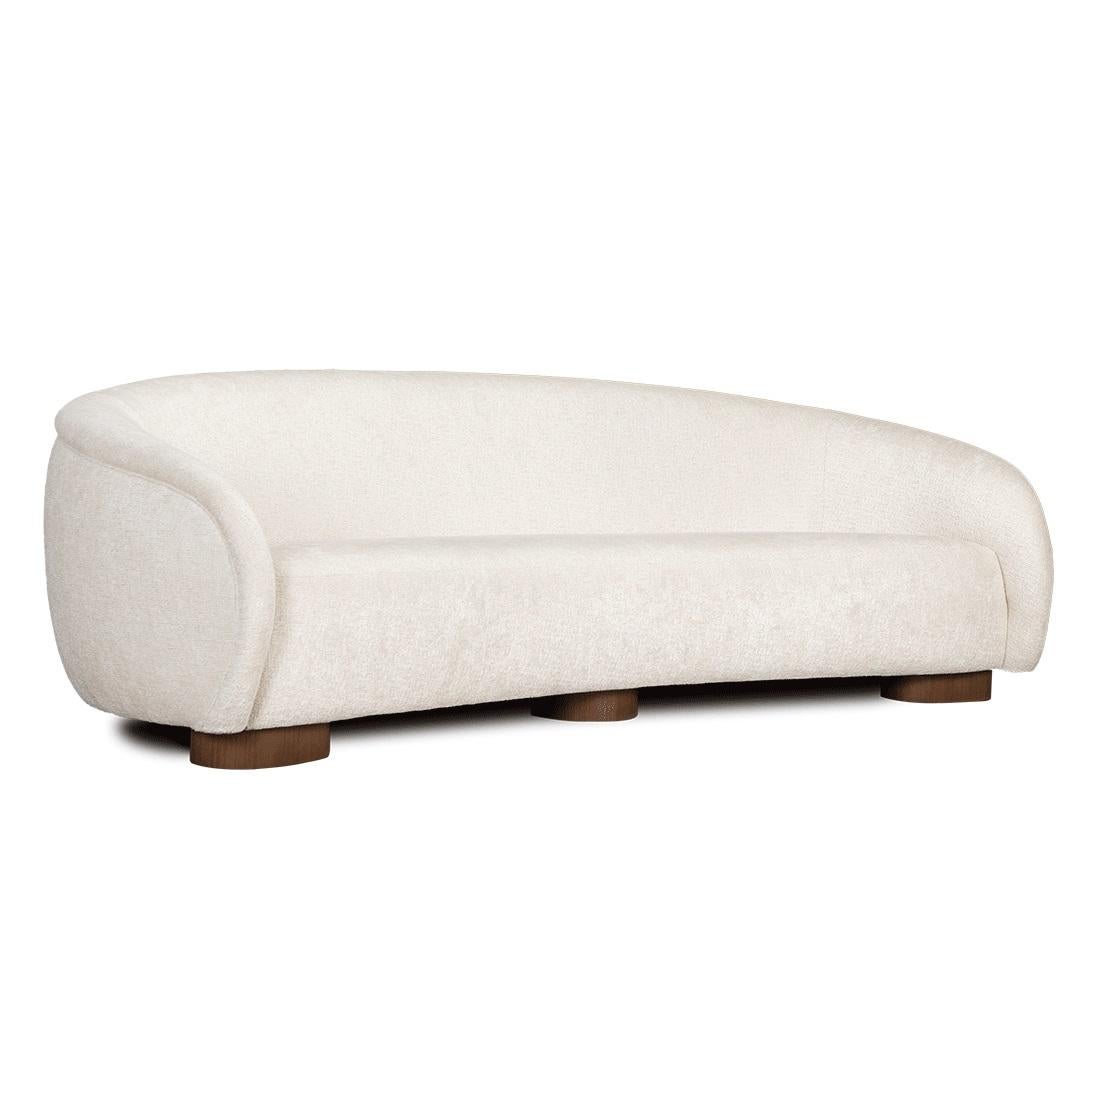 Ce canapé exceptionnel vous apporte plus de courbes et de confort. Ce canapé comprend quatre coussins 45x 45 et a une structure en bois massif avec des pieds dans des finitions standard.
Nous faisons de notre mieux pour accélérer la production et